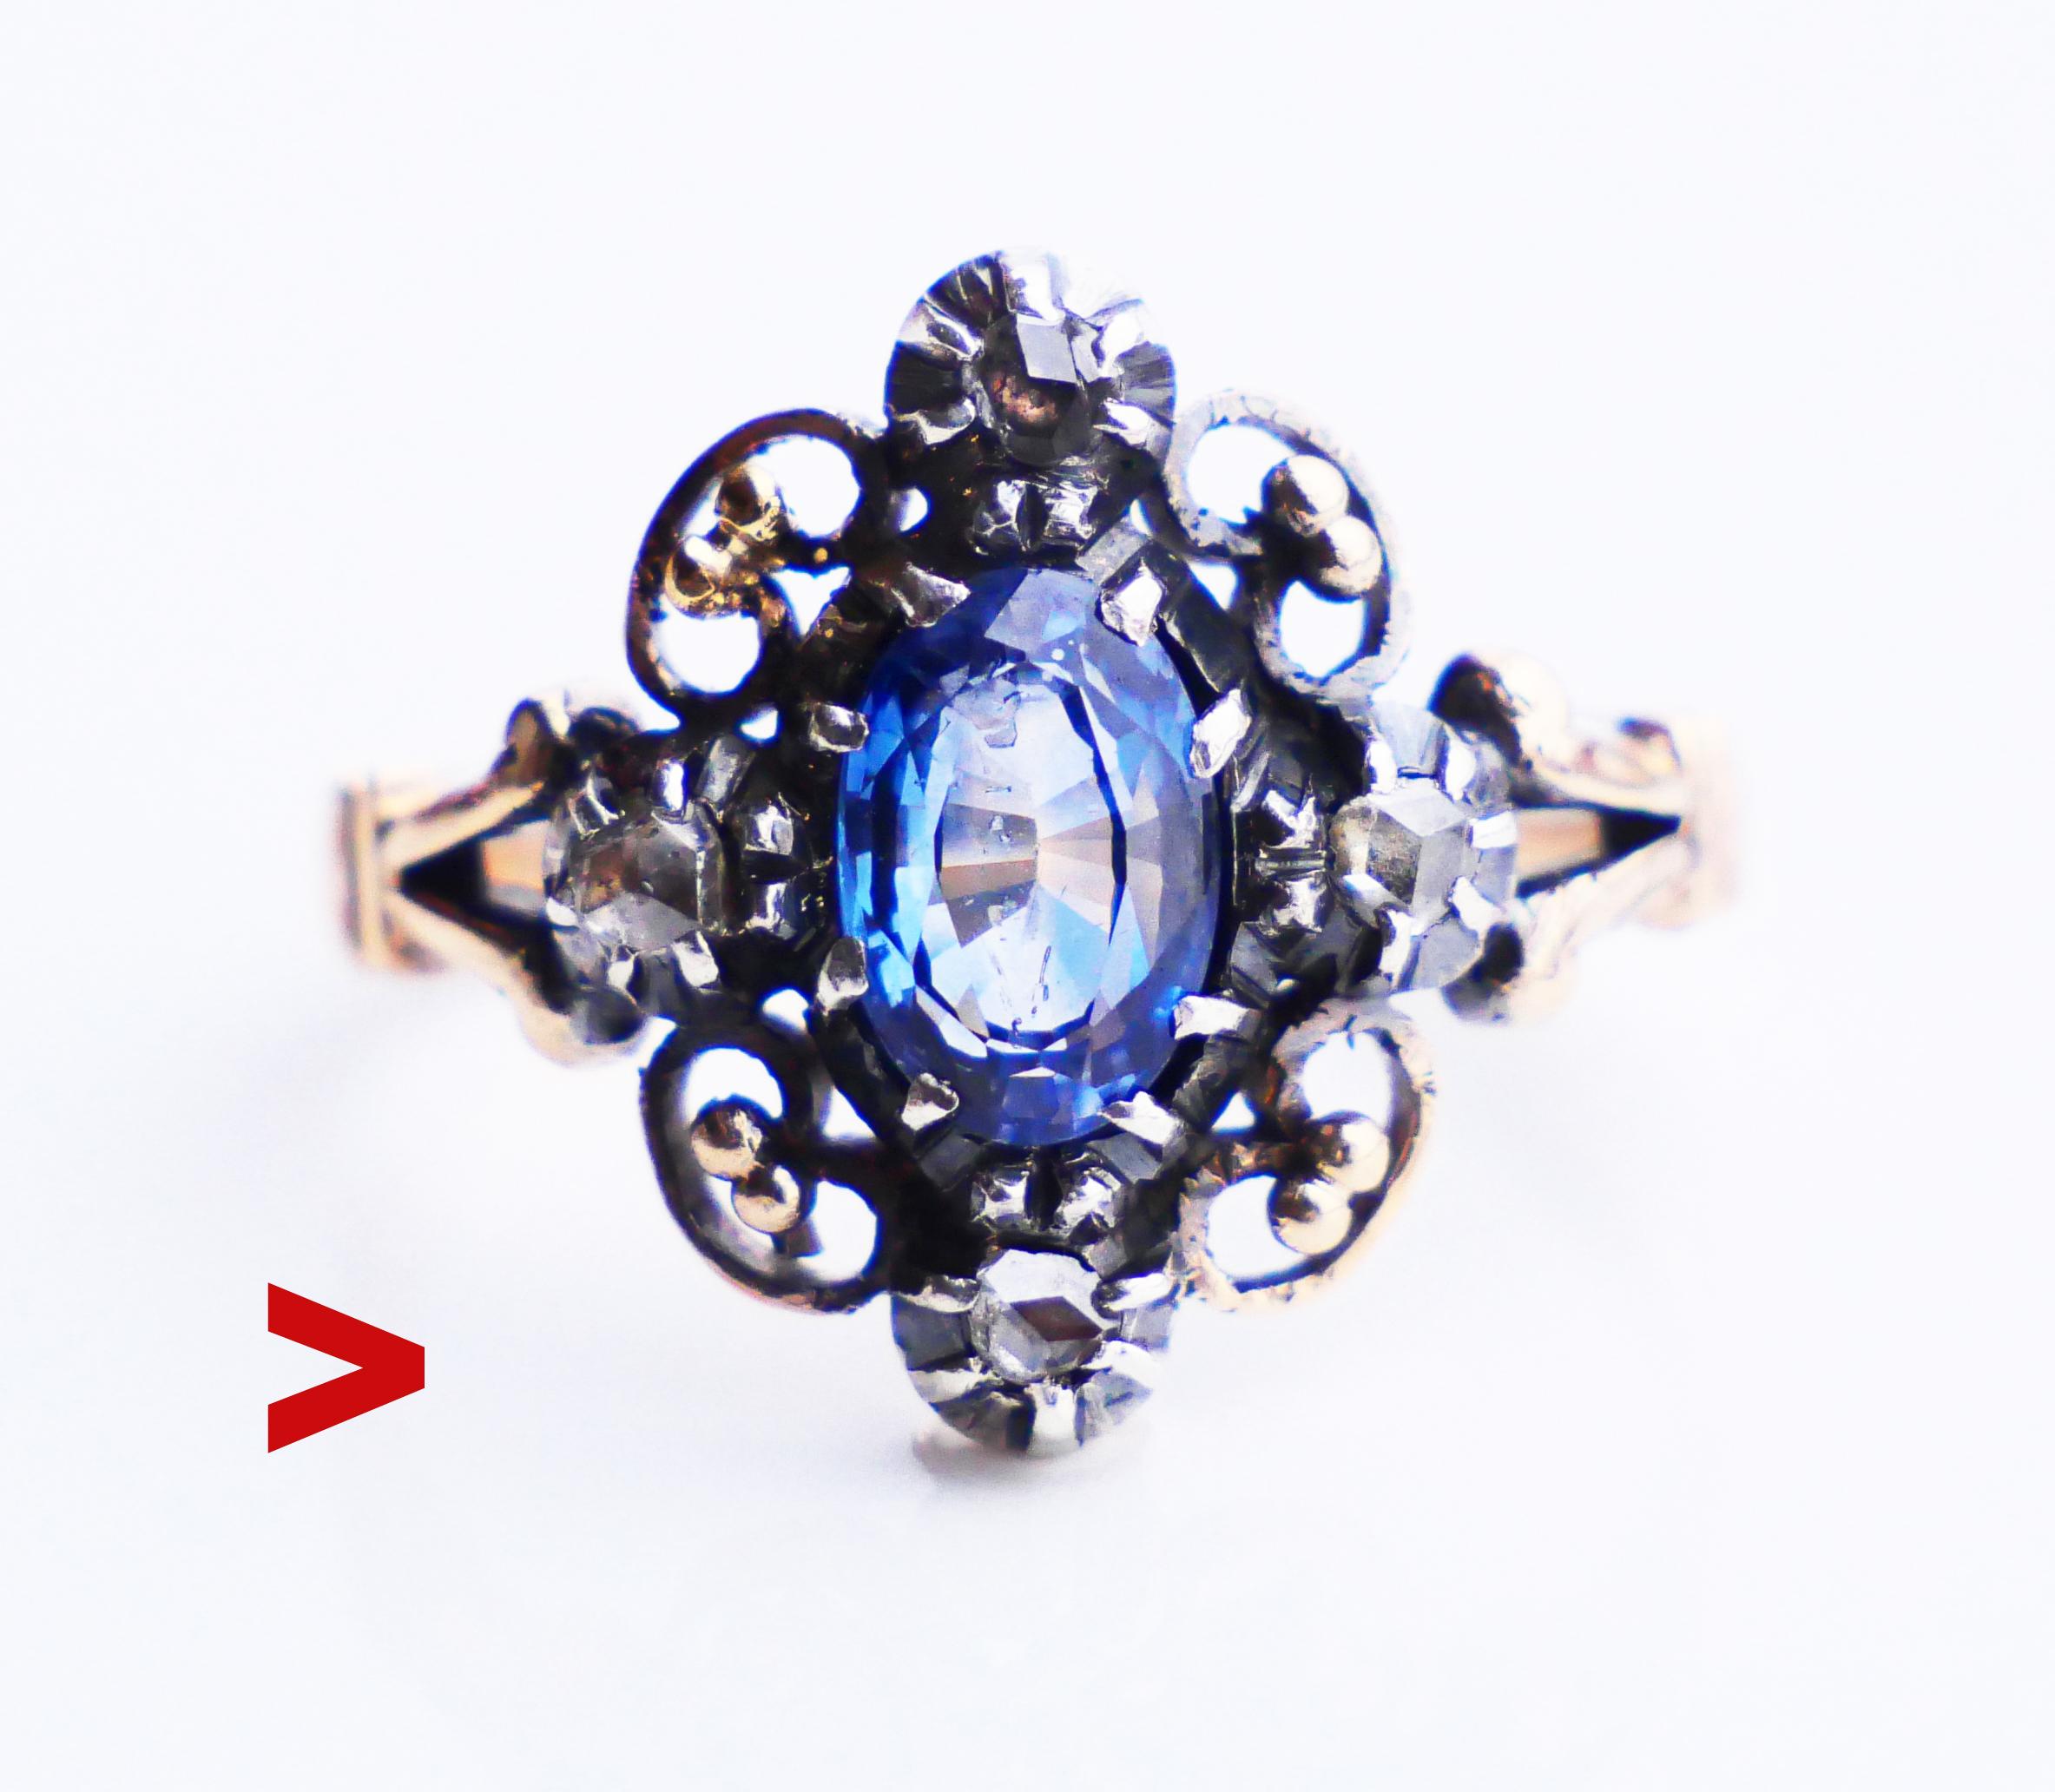 Dieser Ring im Renaissancestil besteht aus einem blumenförmigen Silberkomposit auf einer Krone aus 18 Karat Gold mit den Maßen 16 mm x 13 mm x 3,5 mm. Der zentrale Stein ist ein oval geschliffener natürlicher Ceylon-Saphir von hellblauer Farbe